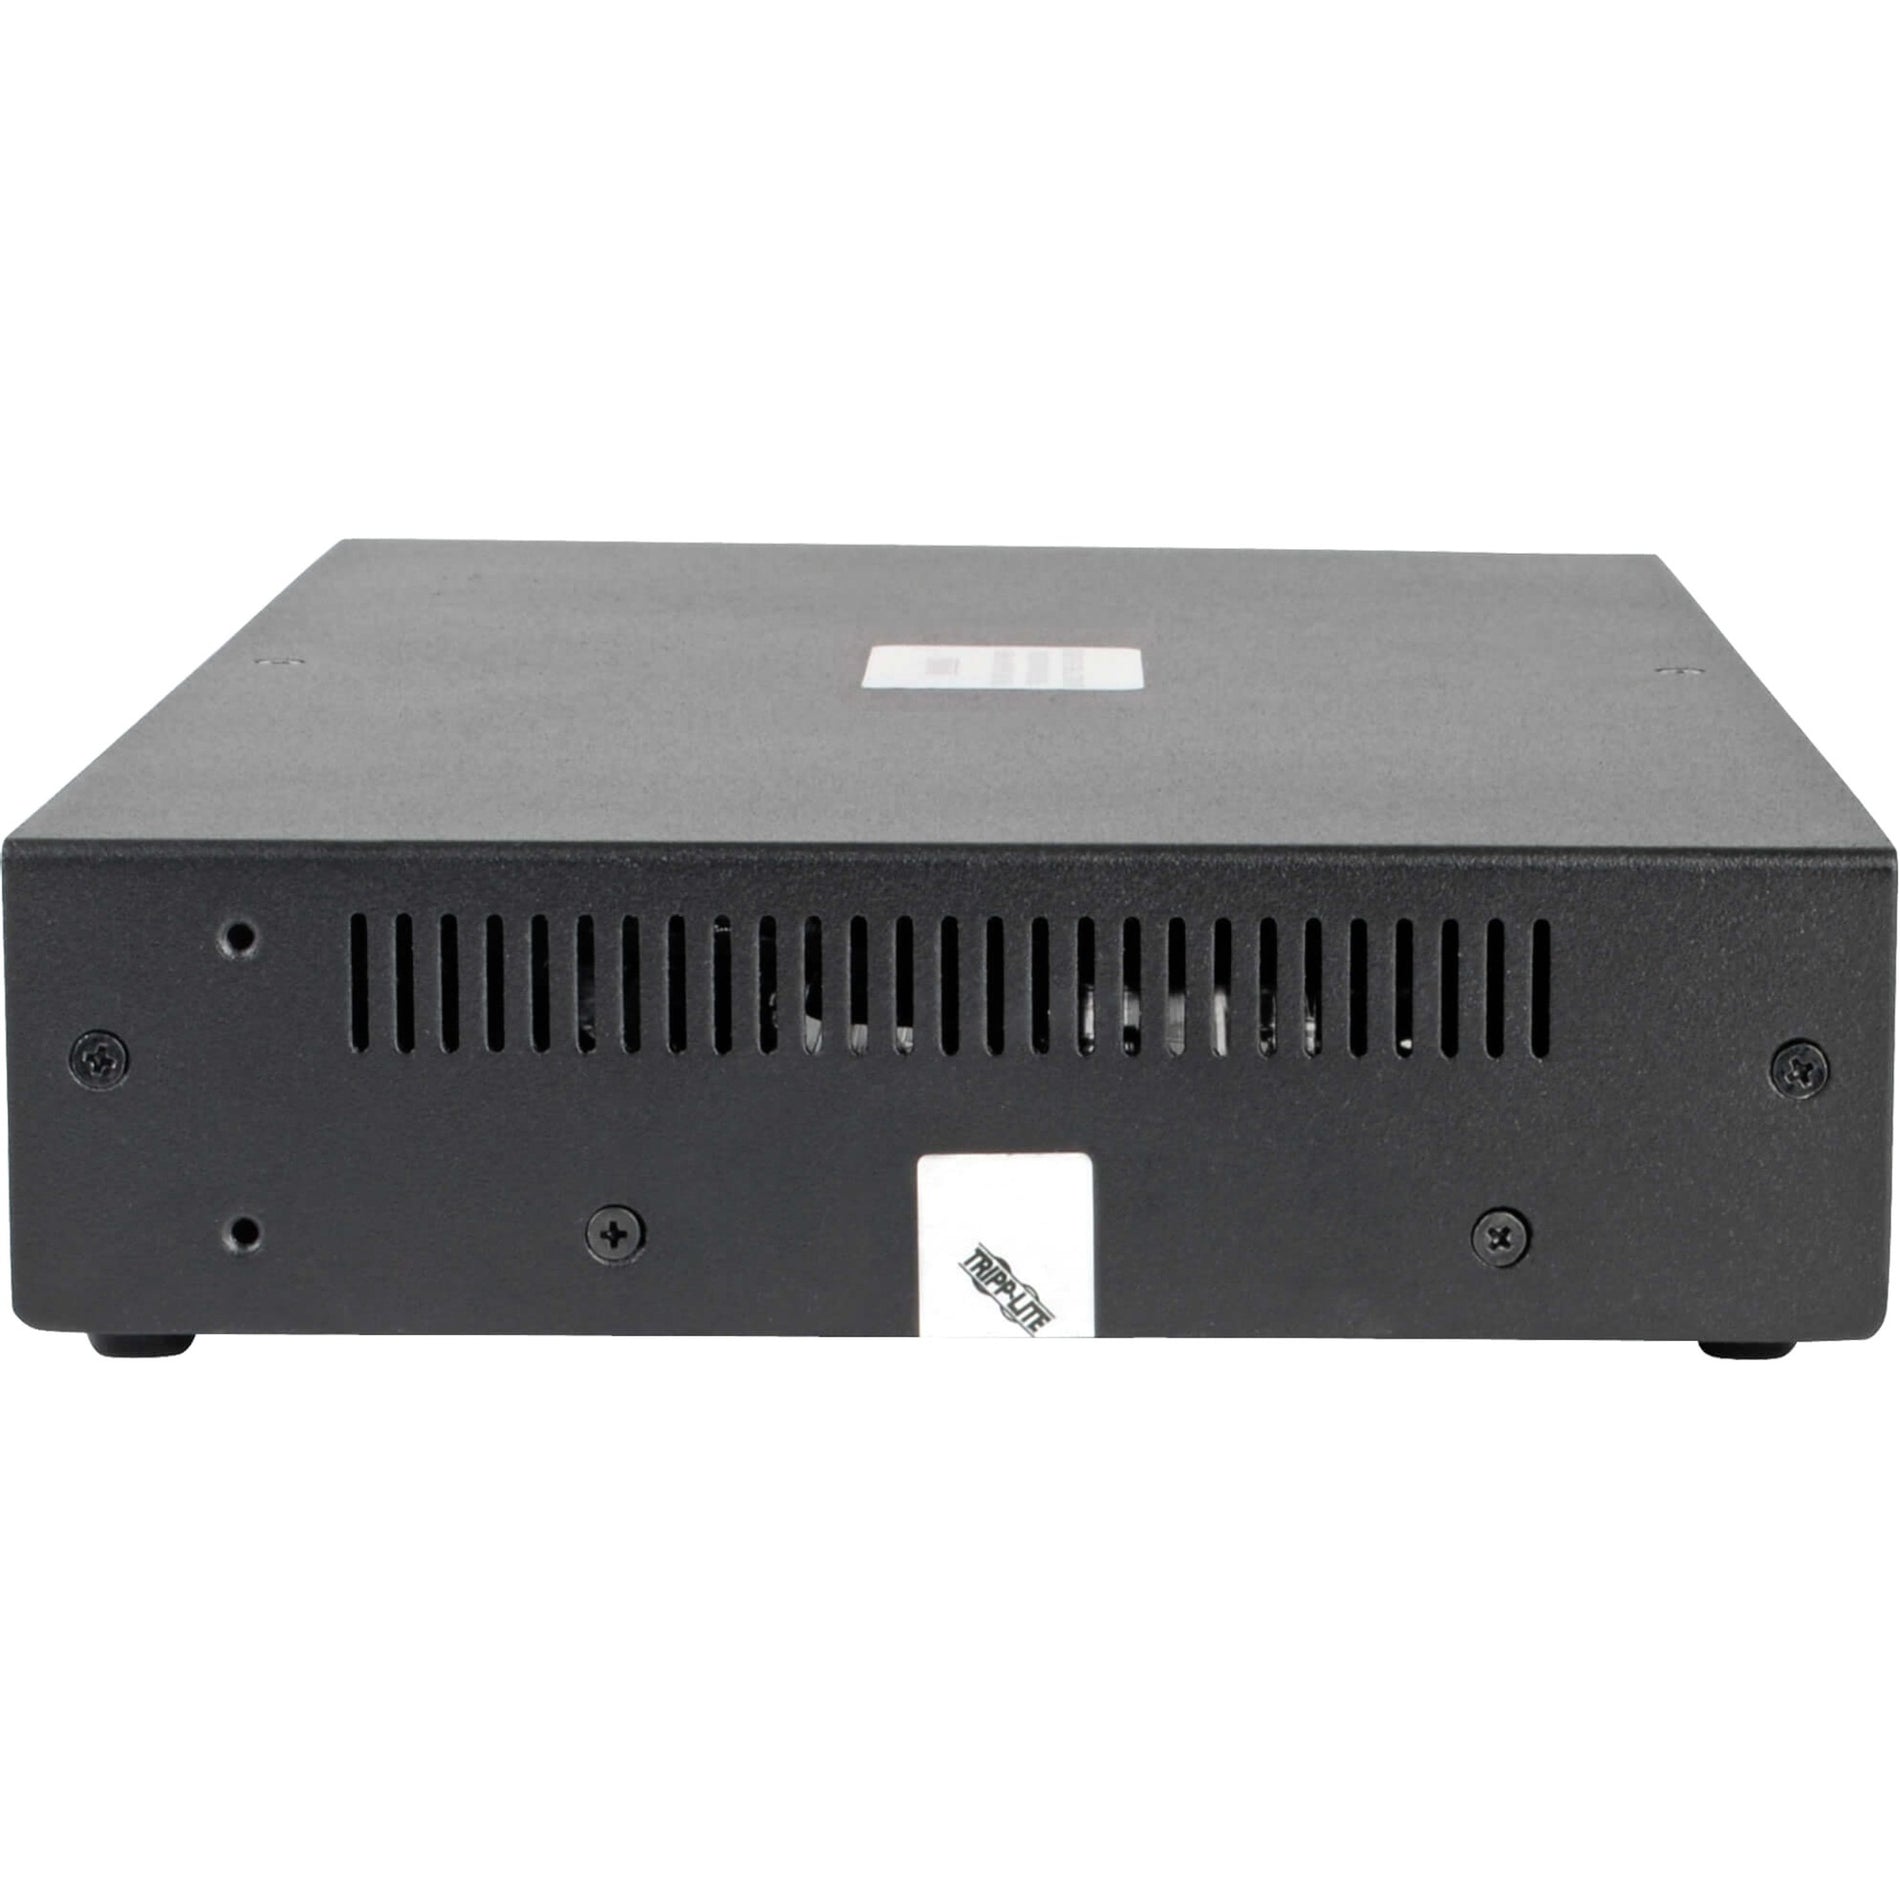 Tripp Lite B002-DV1A4 4-Port NIAP PP3.0-Certified DVI-I KVM Switch Maximum Video Resolution 2560 x 1600 3 Year Warranty Tripp Lite B002-DV1A4 4-Port KVM Switch DVI-I certifié NIAP PP3.0 résolution vidéo maximale de 2560 x 1600 garantie de 3 ans